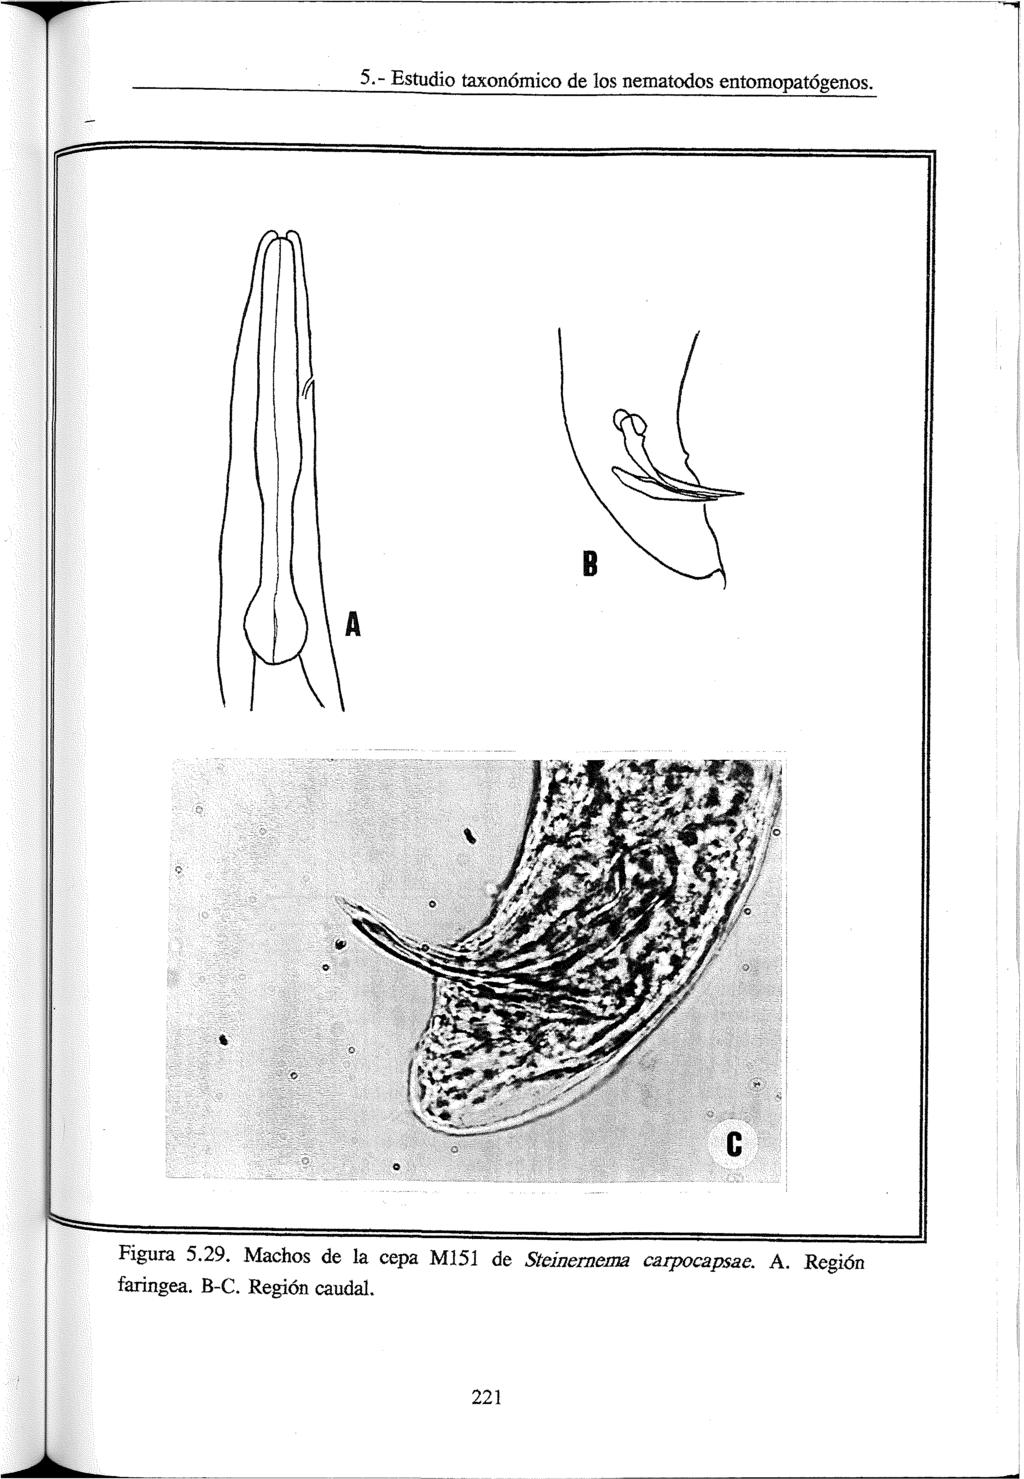 5.- Estudio taxonómico de los nematodos entomopatógenos. *» Figura 5.29.